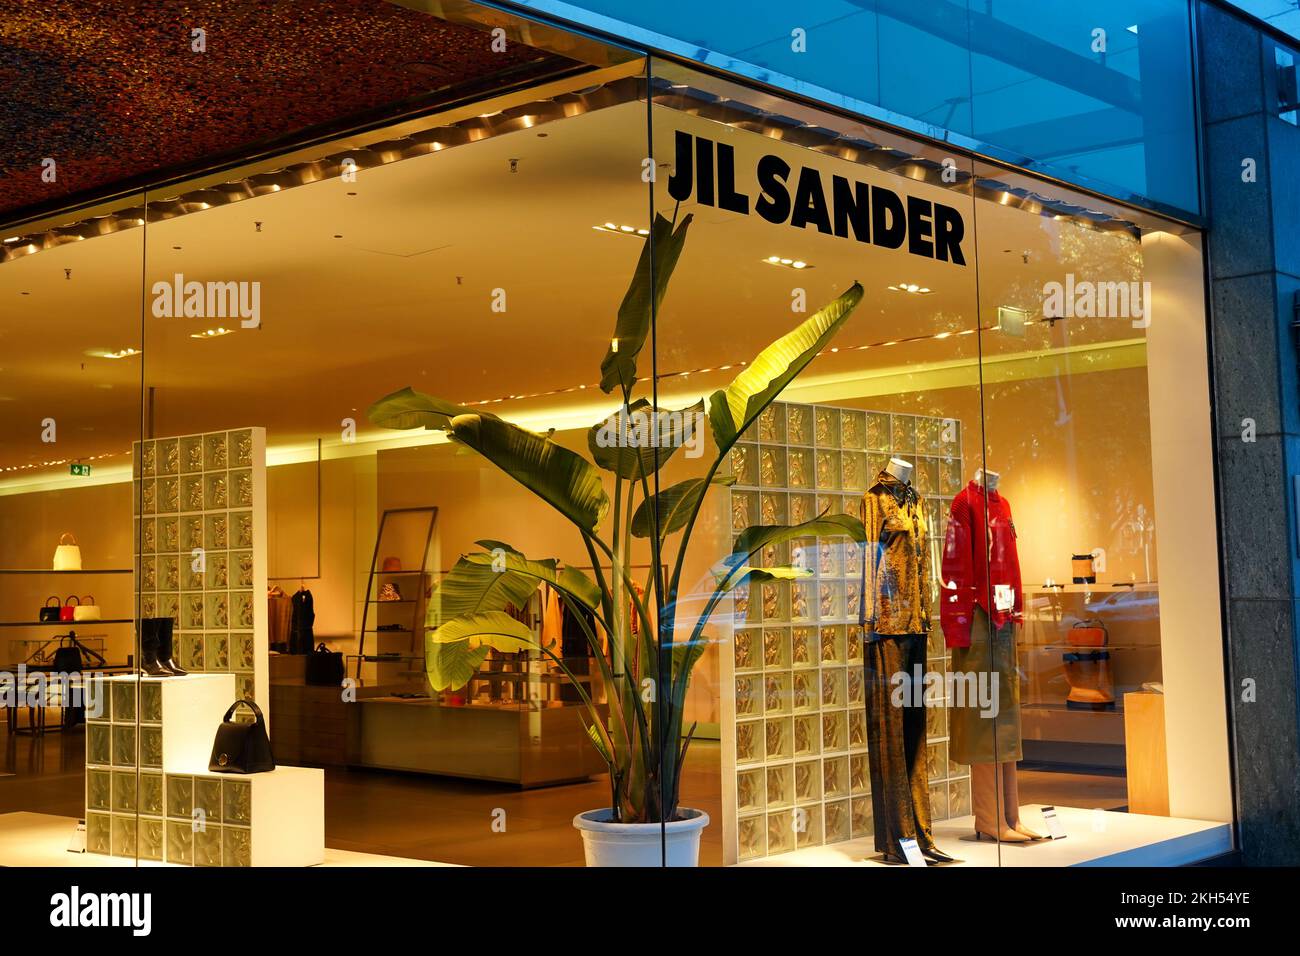 Jil sander, designer hi-res stock photography and images - Alamy